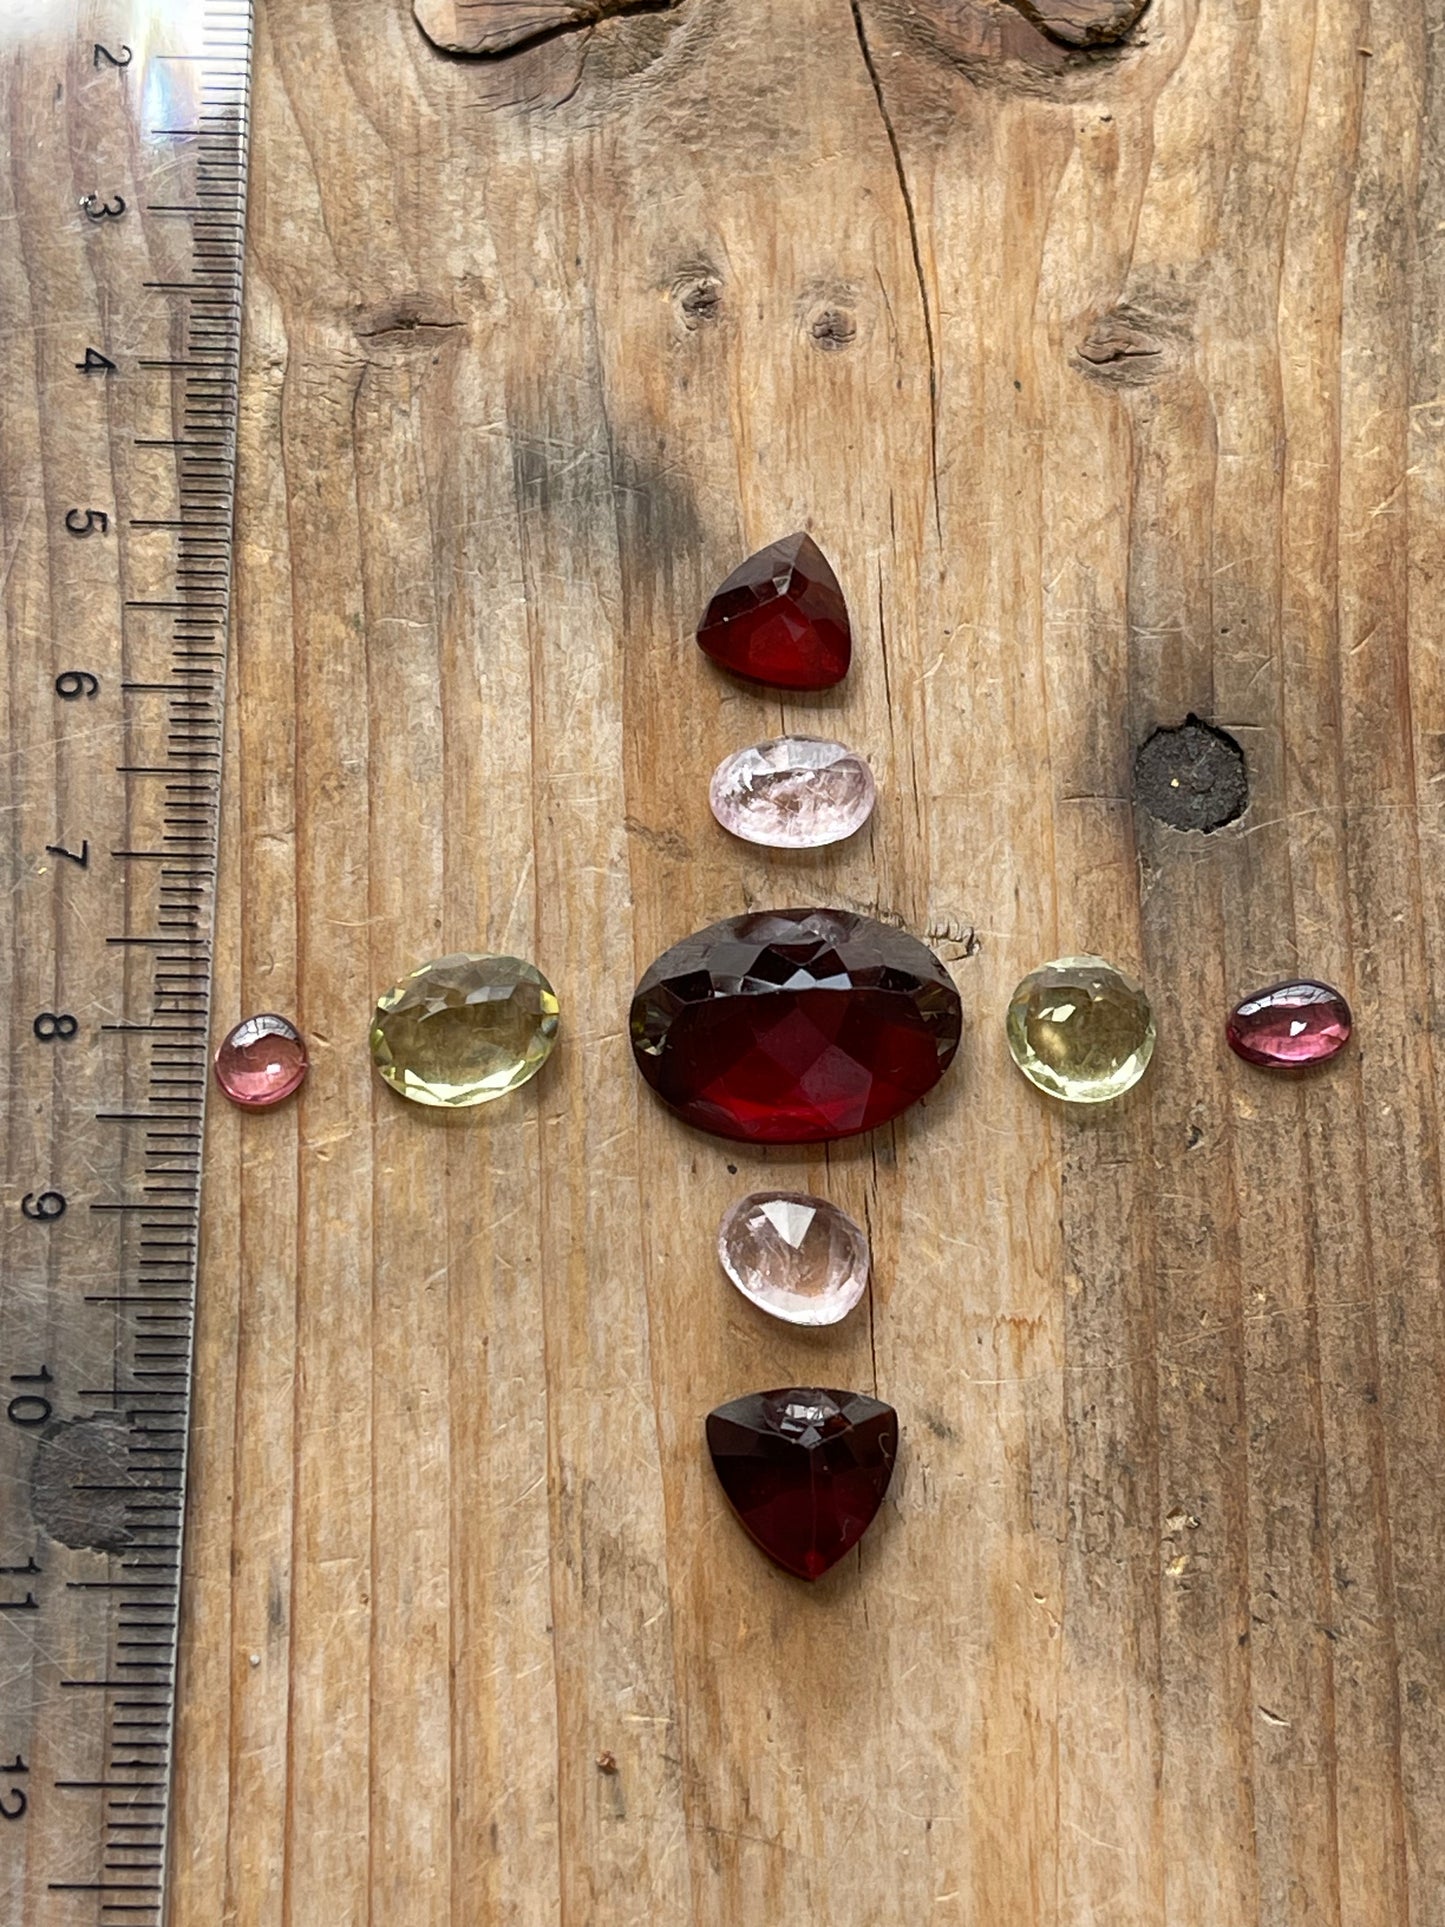 Gemstone Collection 42: Hessonite, Lemon Quartz, Rose Quartz, Rainbow Tourmaline - 29CT